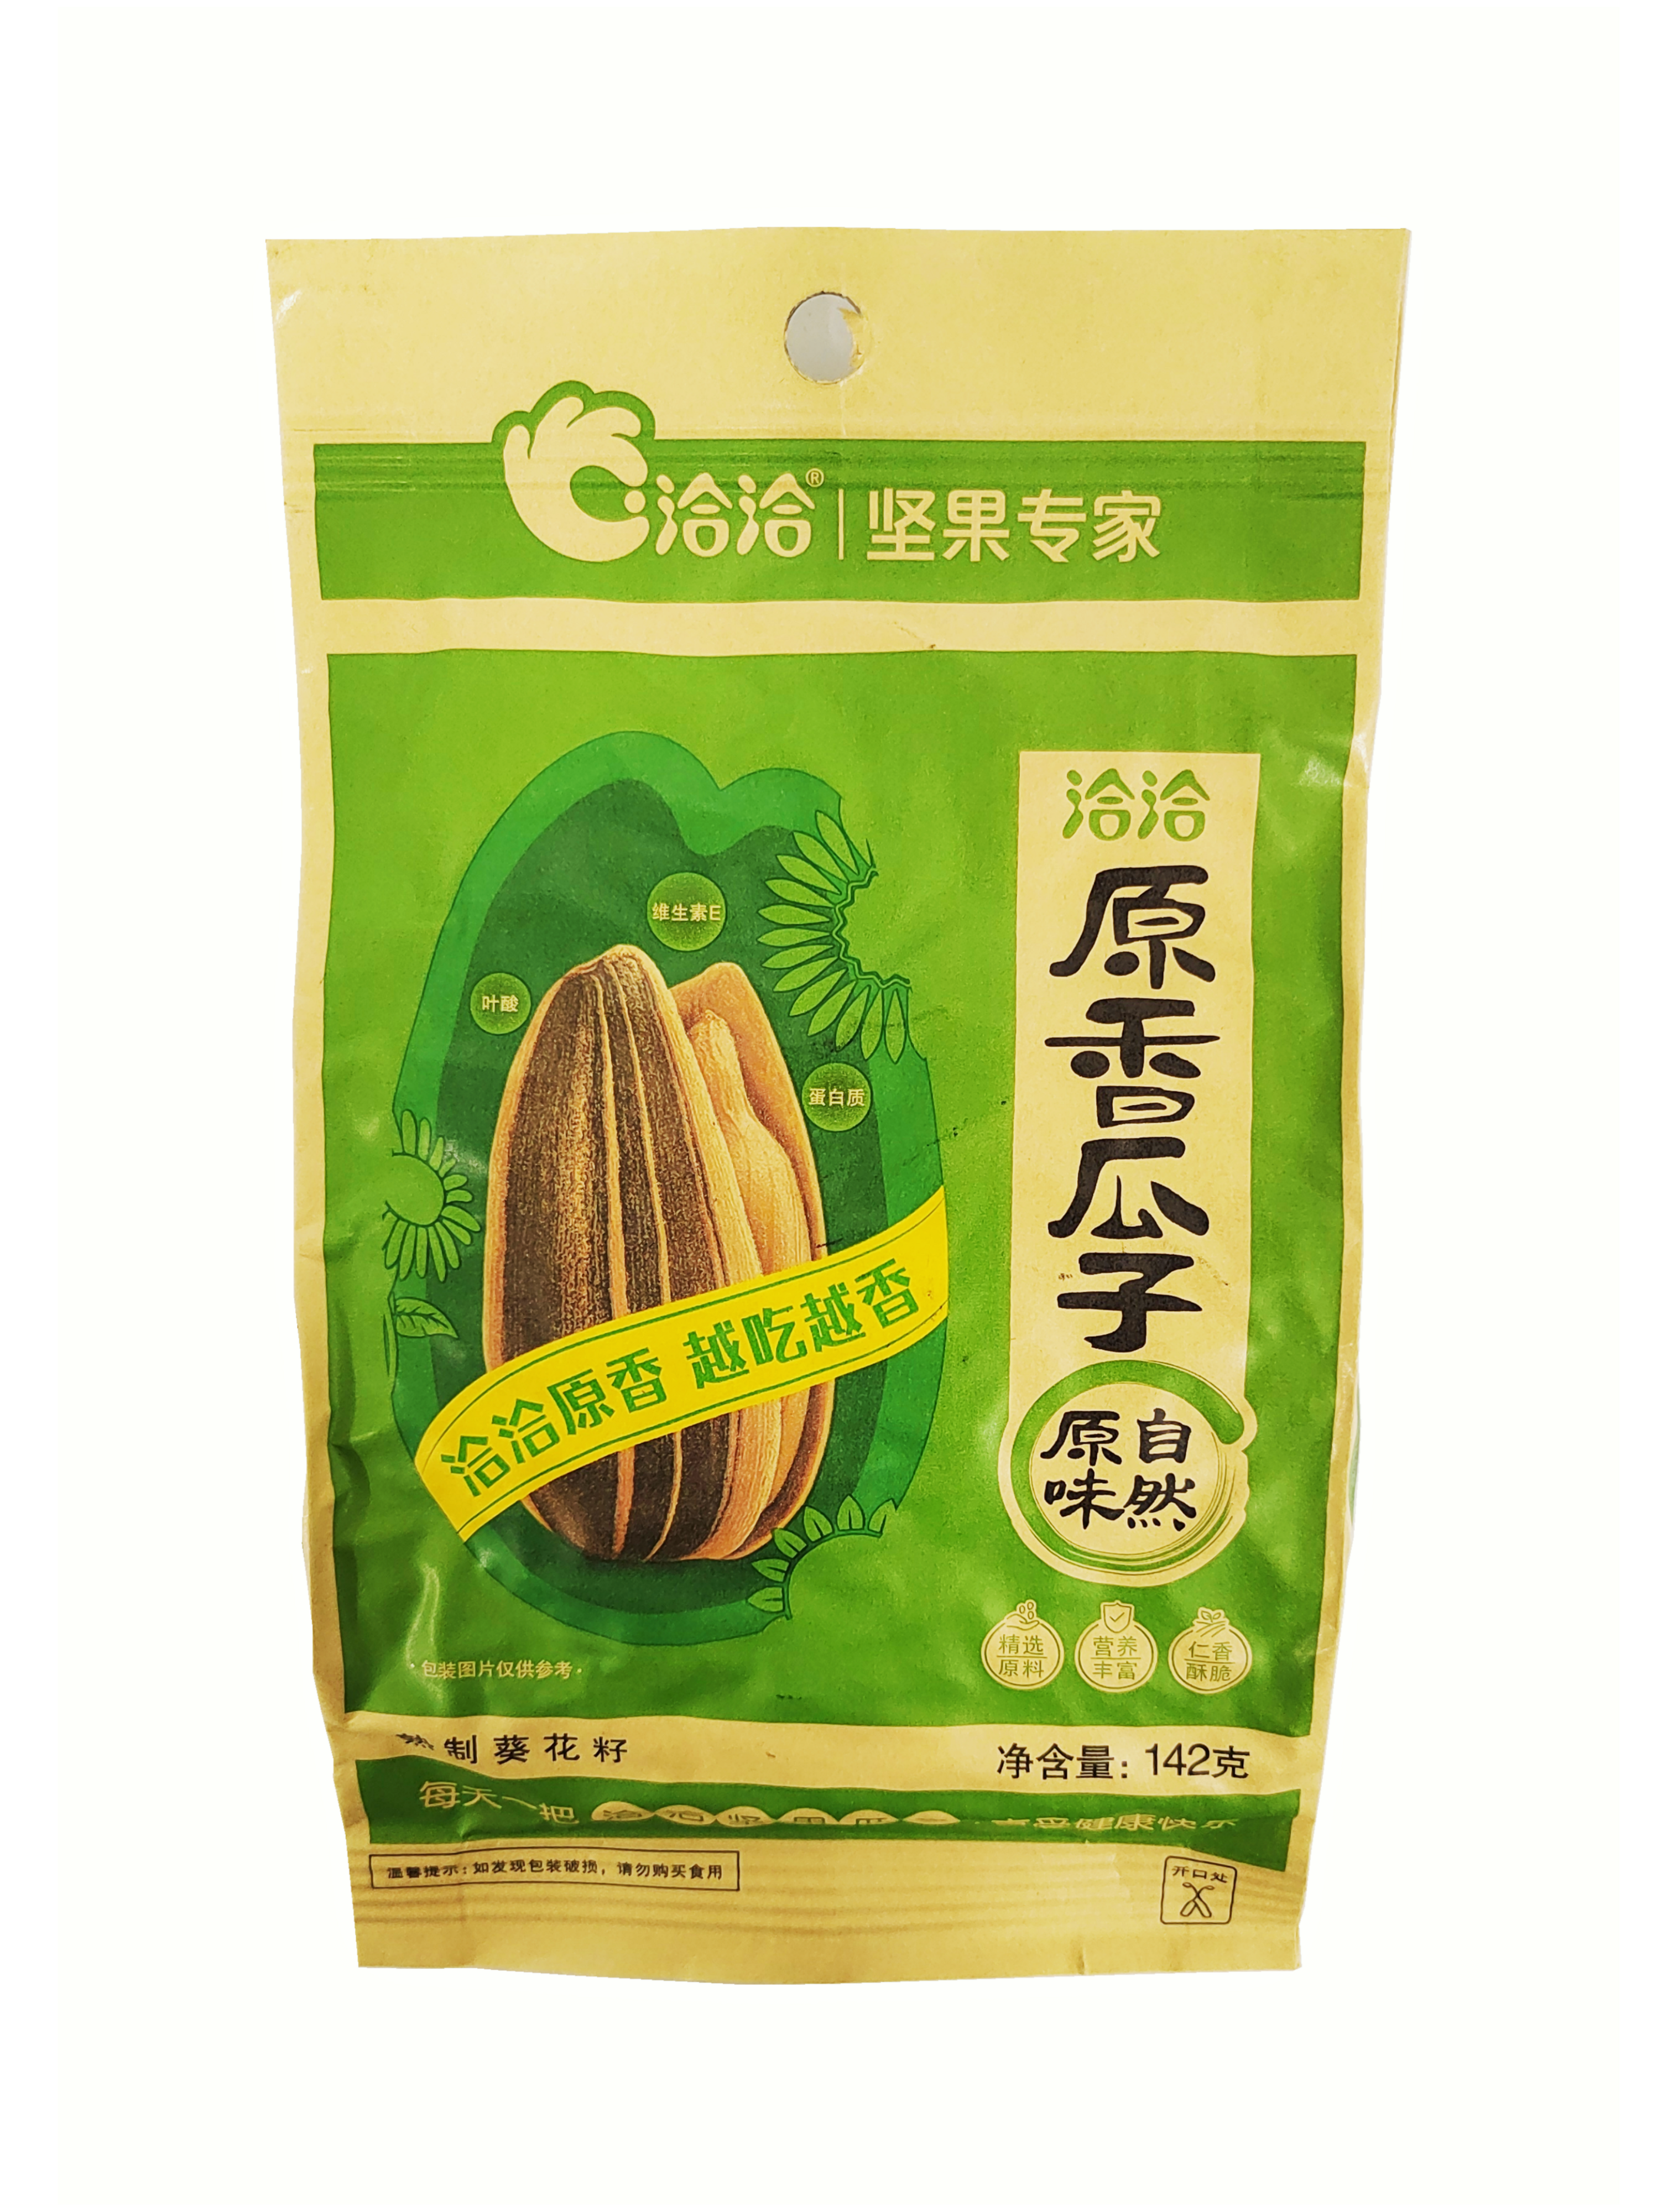 Sunflower seeds Original 142g- Cha Cha China